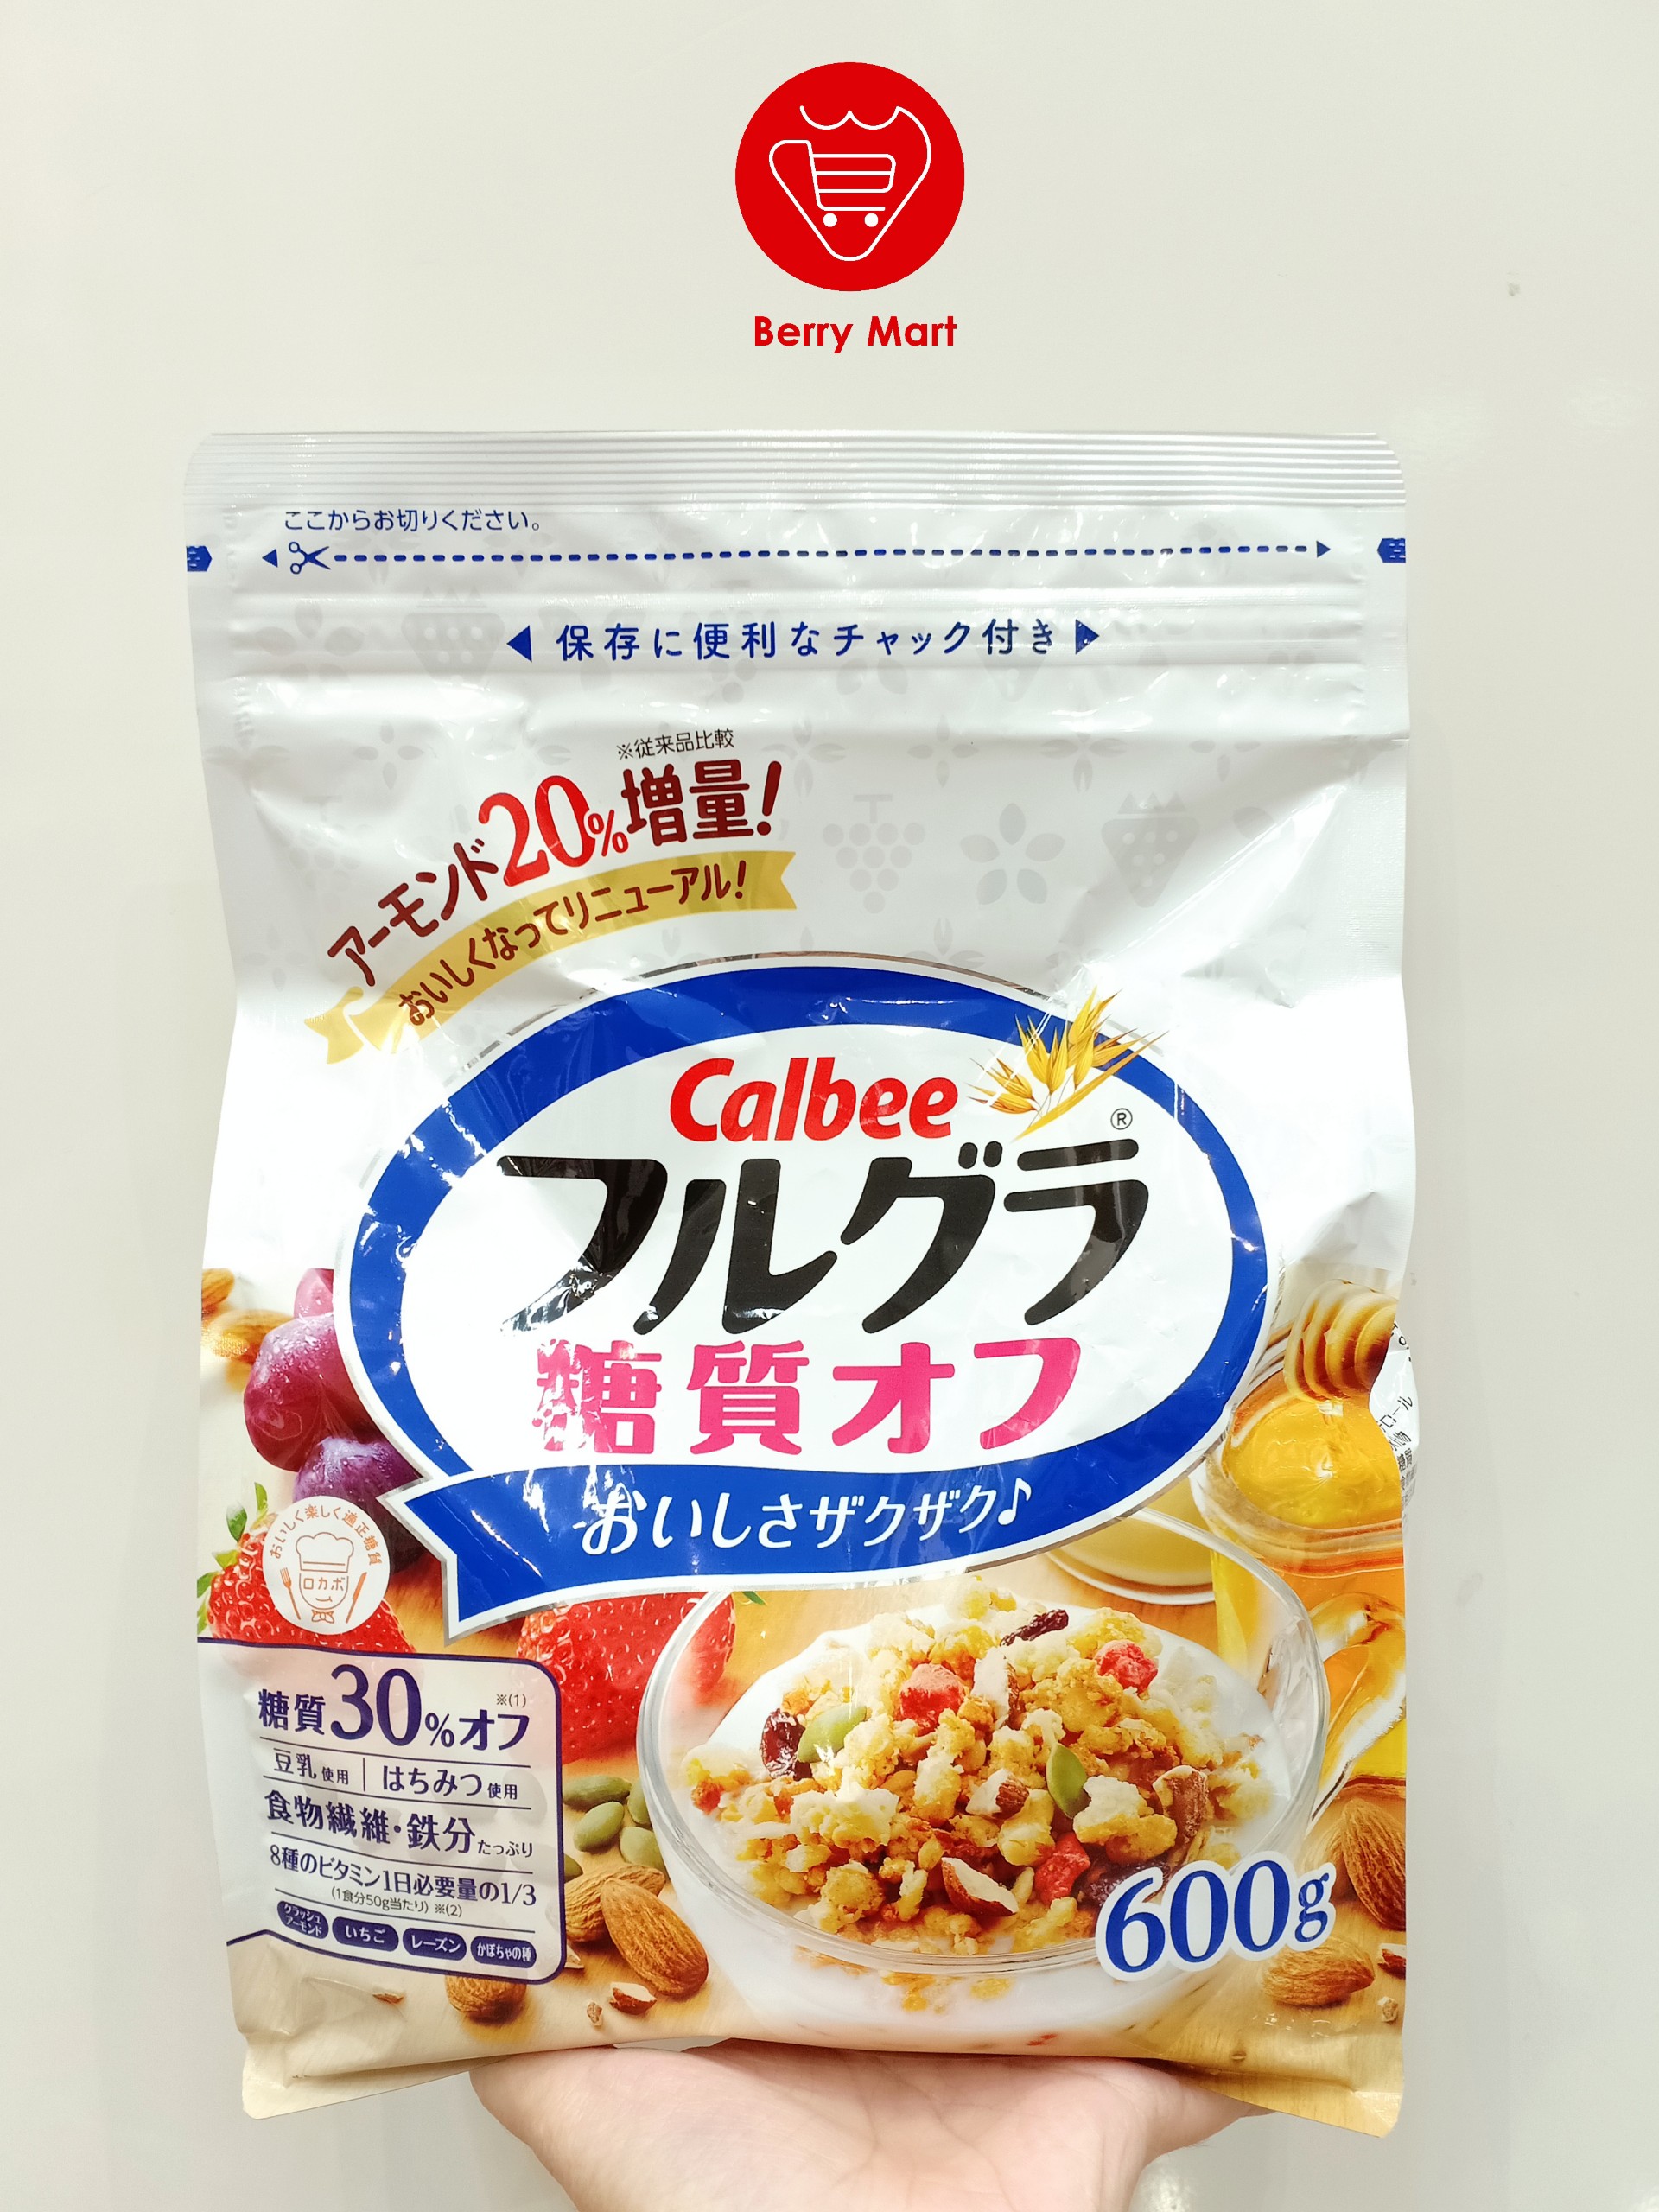 Ngũ cốc dinh dưỡng Calbee ít đường 600g màu trắng Chính hãng Nhật Bản đã